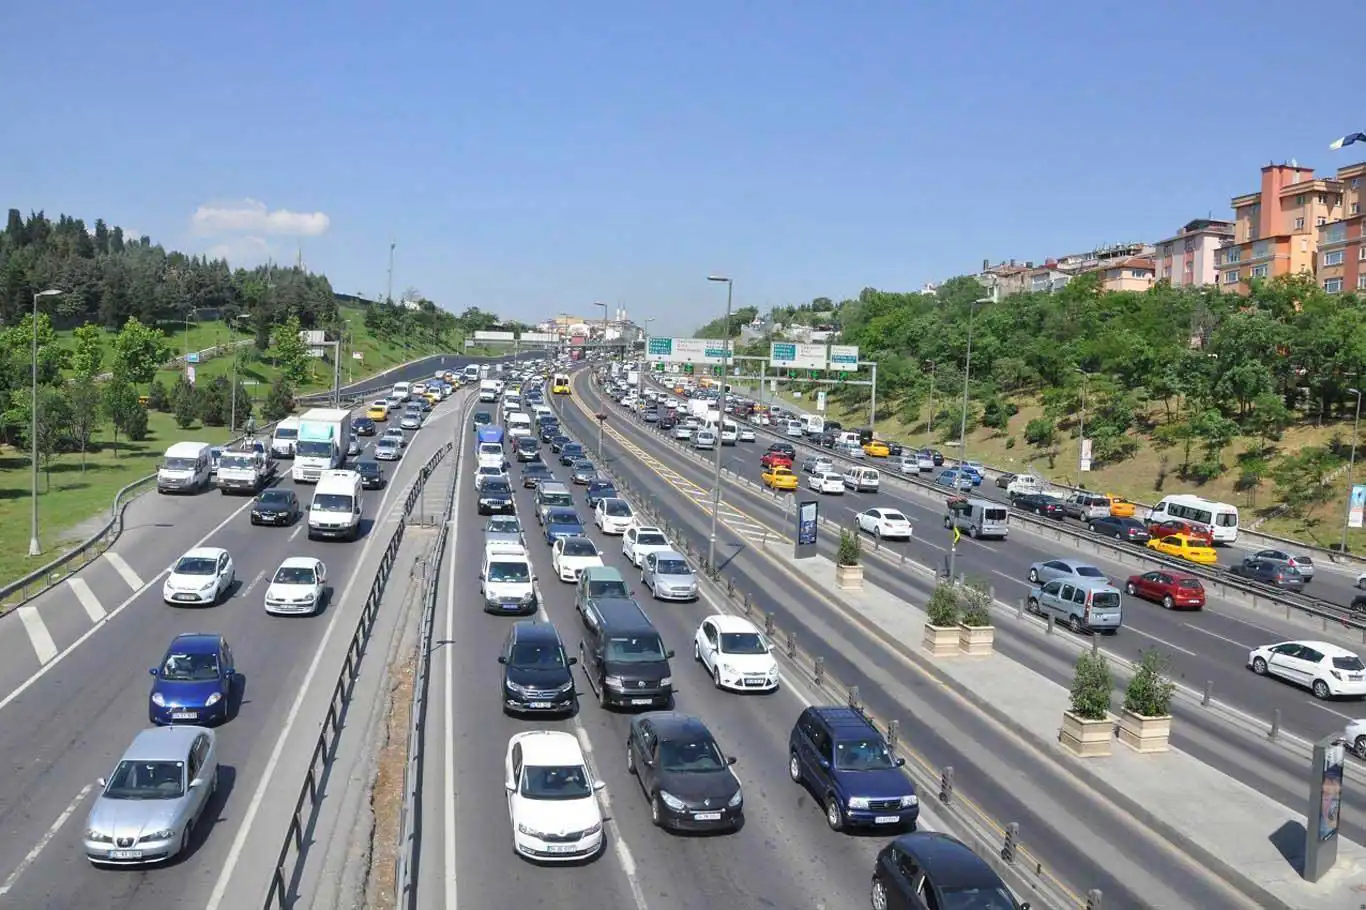 Türkiye's vehicle registrations see 2.5% year-on-year increase in June